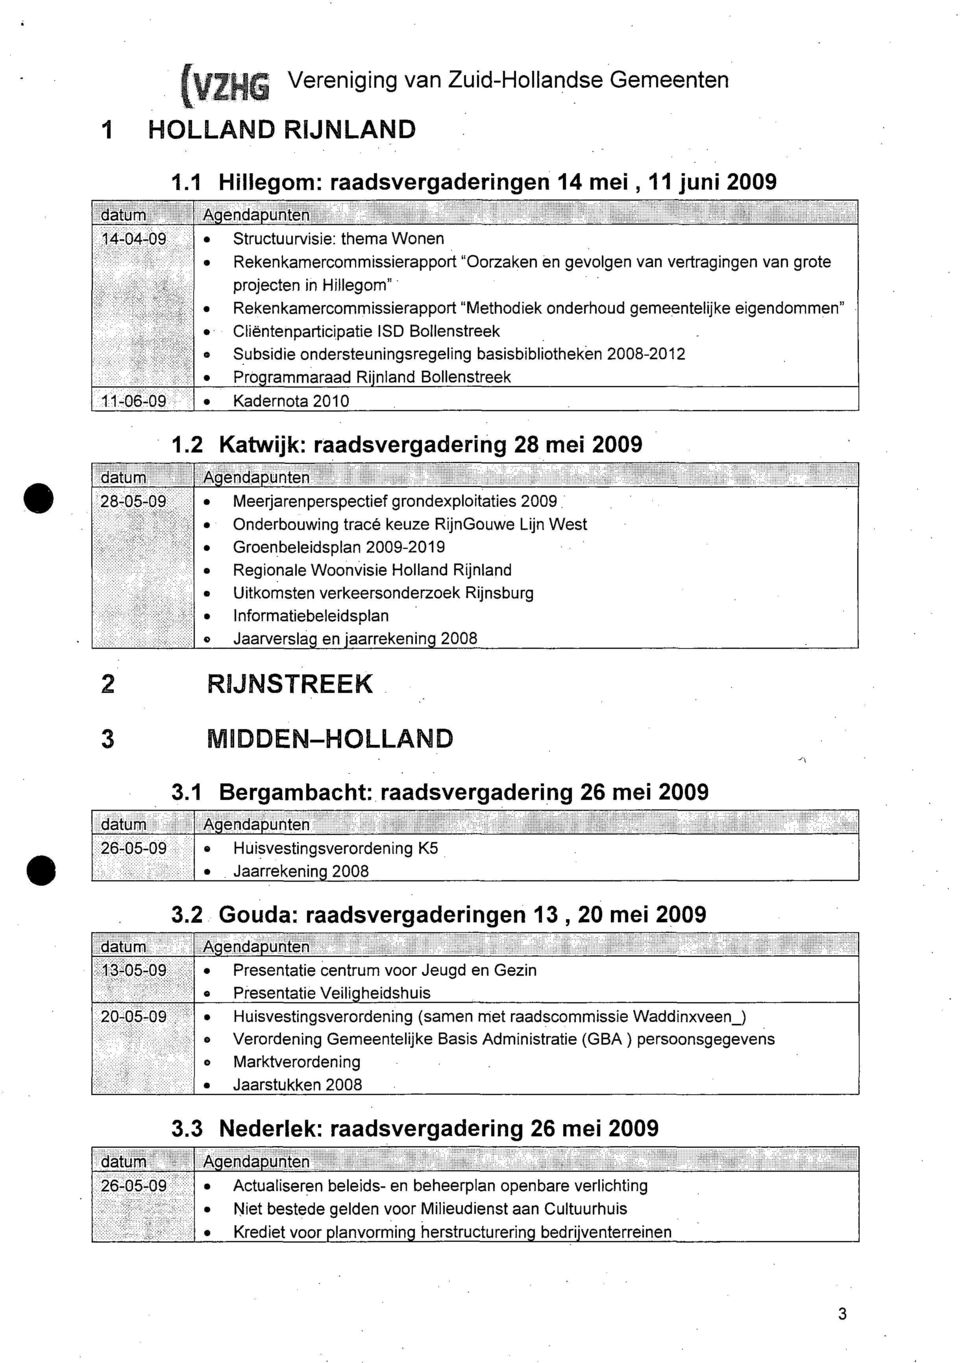 Rekenkamercommissierapport "Methodiek onderhoud gemeentelijke eigendommen" Cliëntenparticipatie ISD Bollenstreek Subsidie ondersteuningsregeling basisbibliotheken 2008-2012 Programmaraad Rijnland